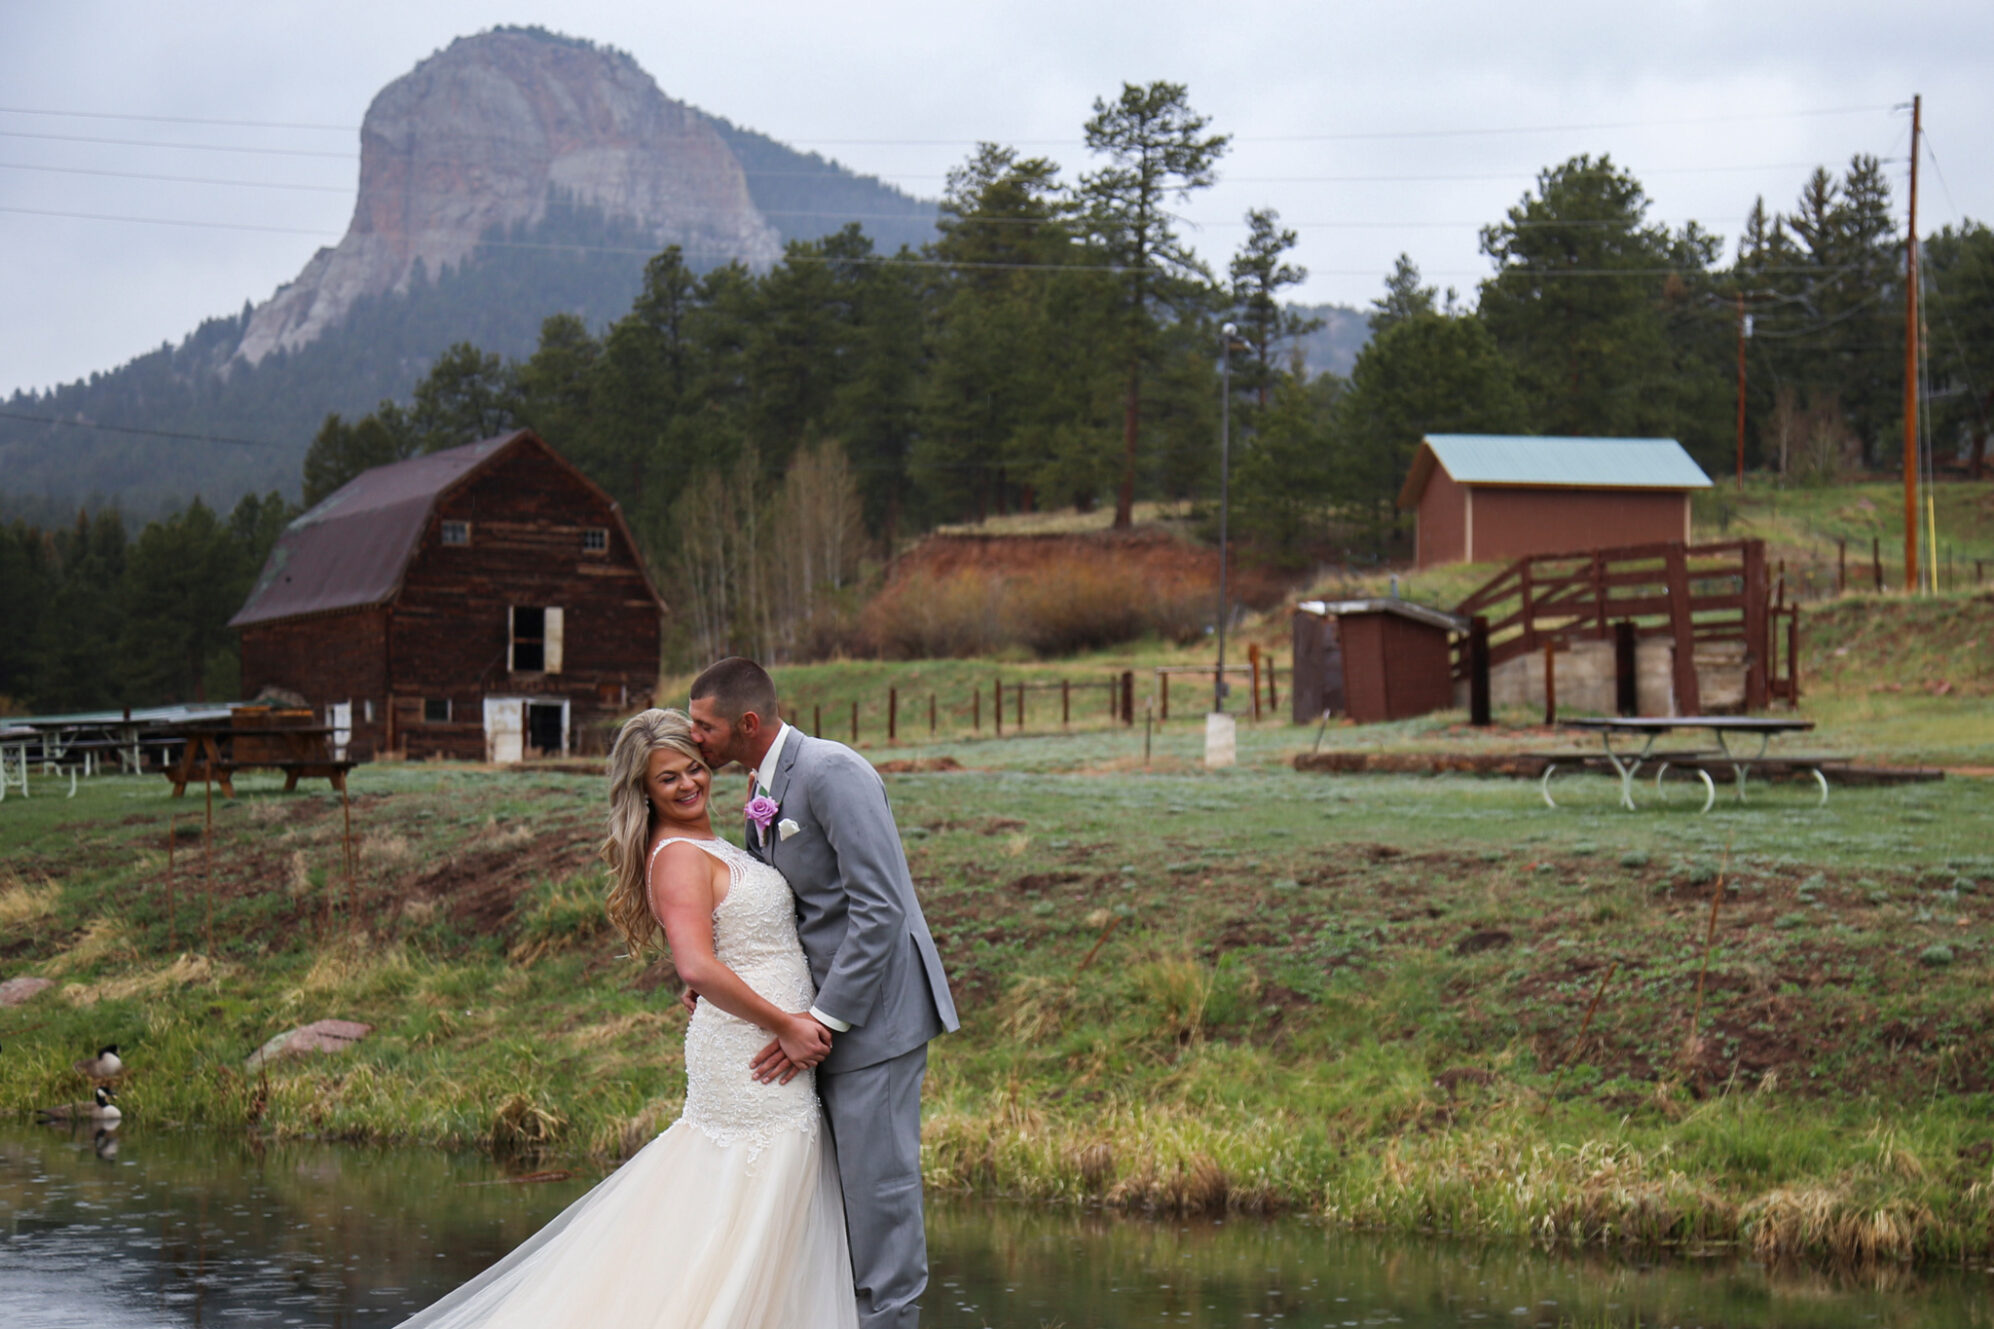 Colorado Mountain Photography wedding Wedgewood Weddings 